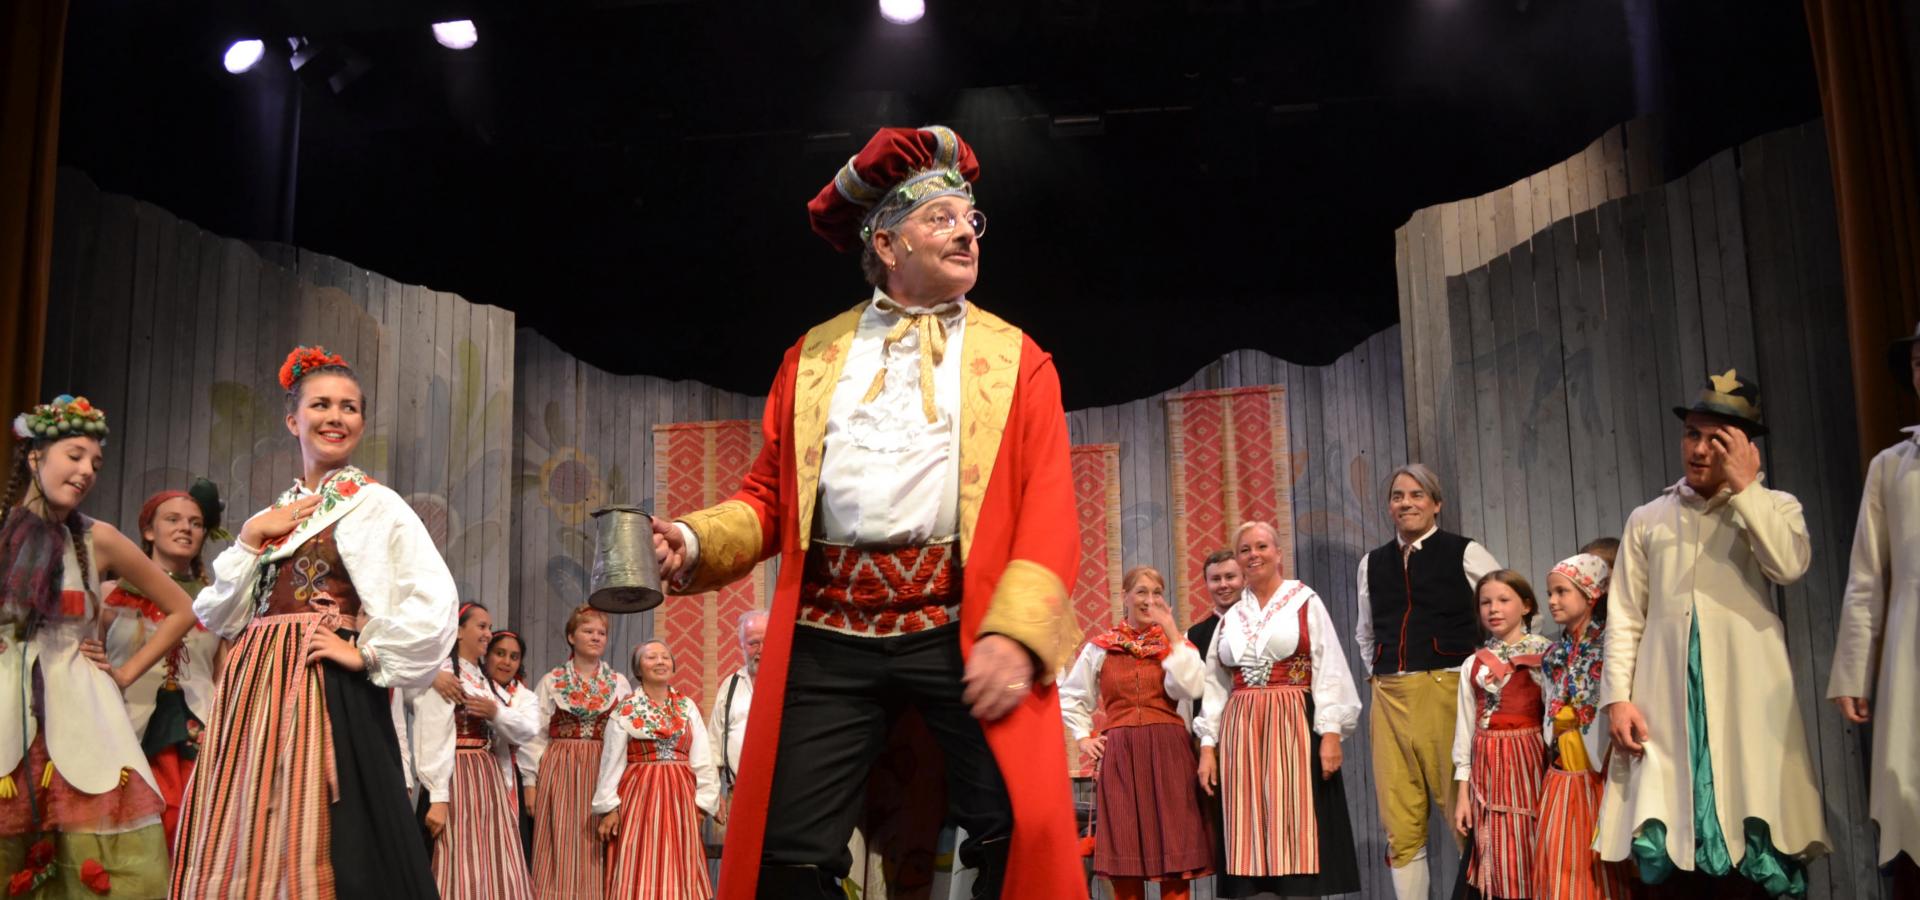 En teaterscen med människor i folkdräkt, i mitten en man i röd kappa och hatt.